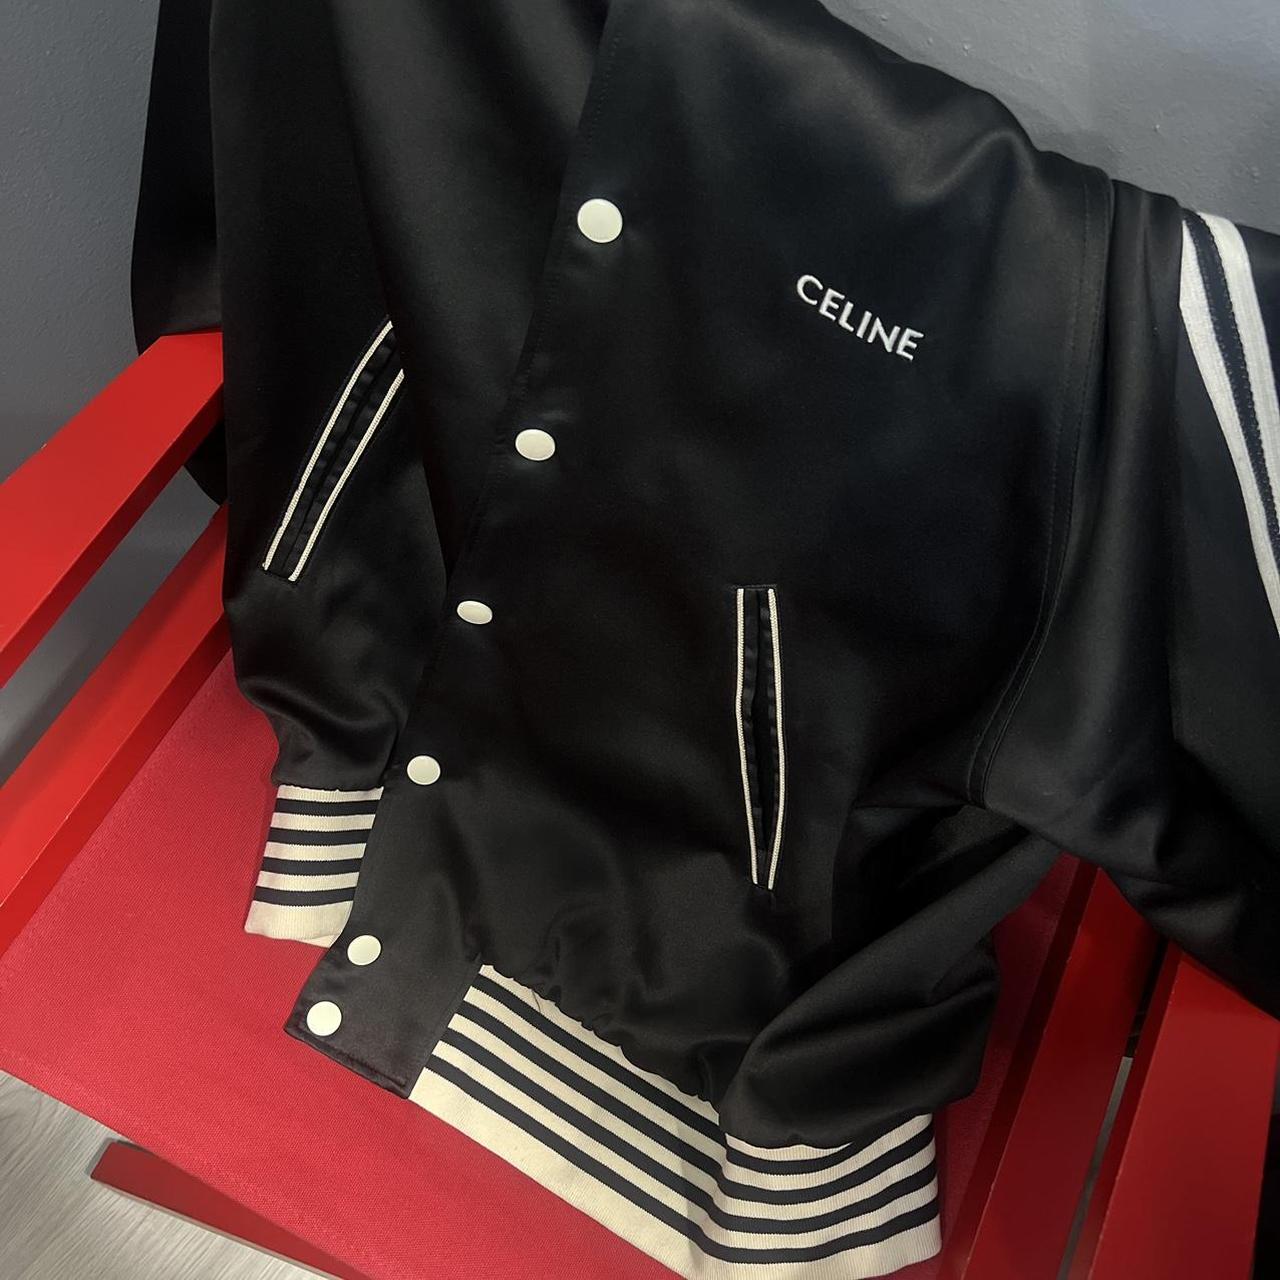 Celine jacket - Depop